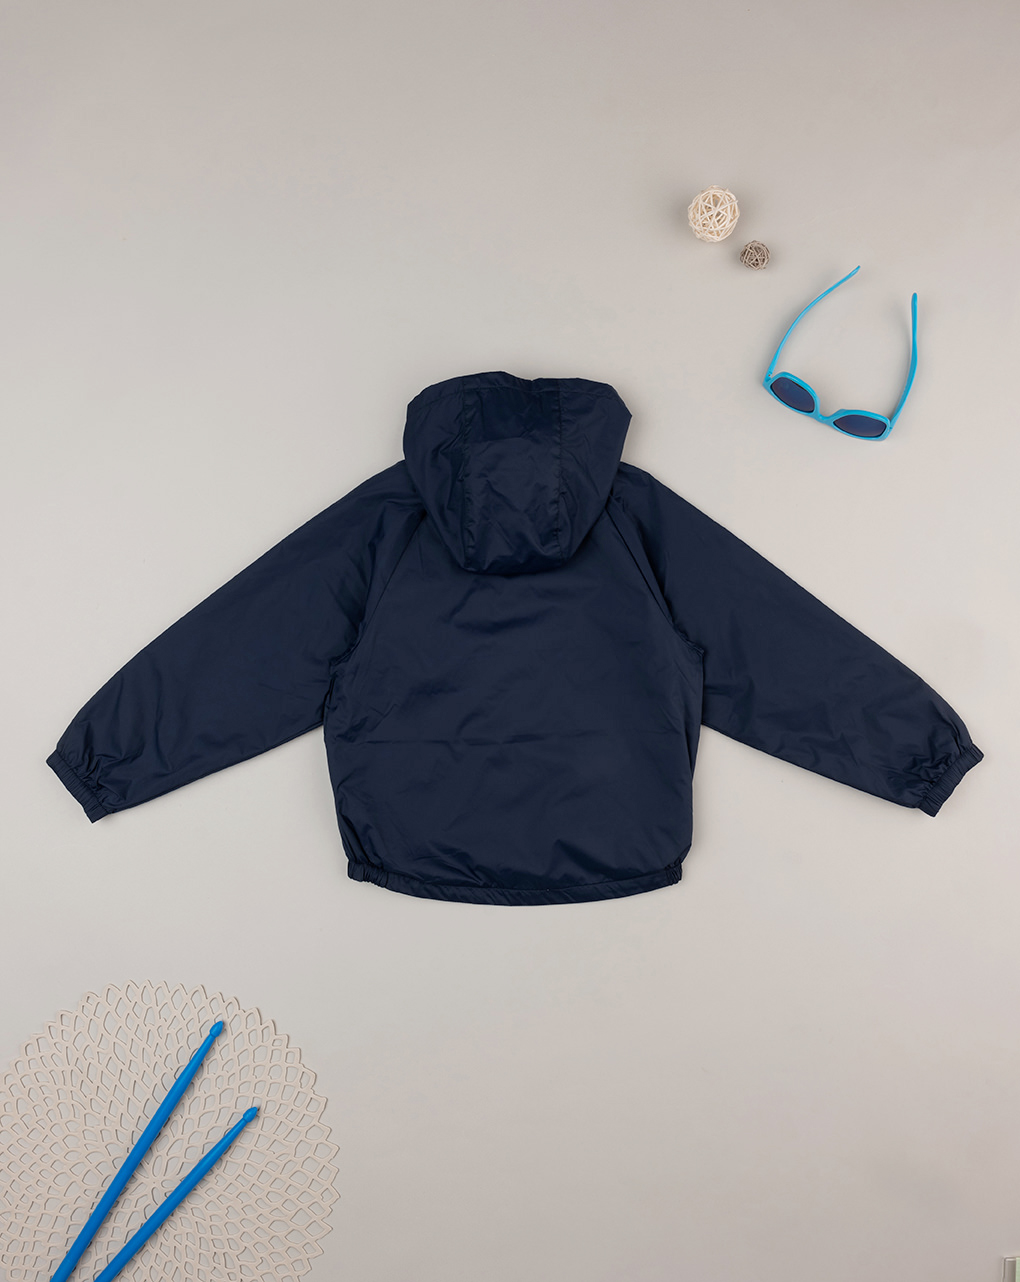 παιδικό αντιανεμικό μπουφάν μπλε με δεινόσαυρο για αγόρι - Prénatal